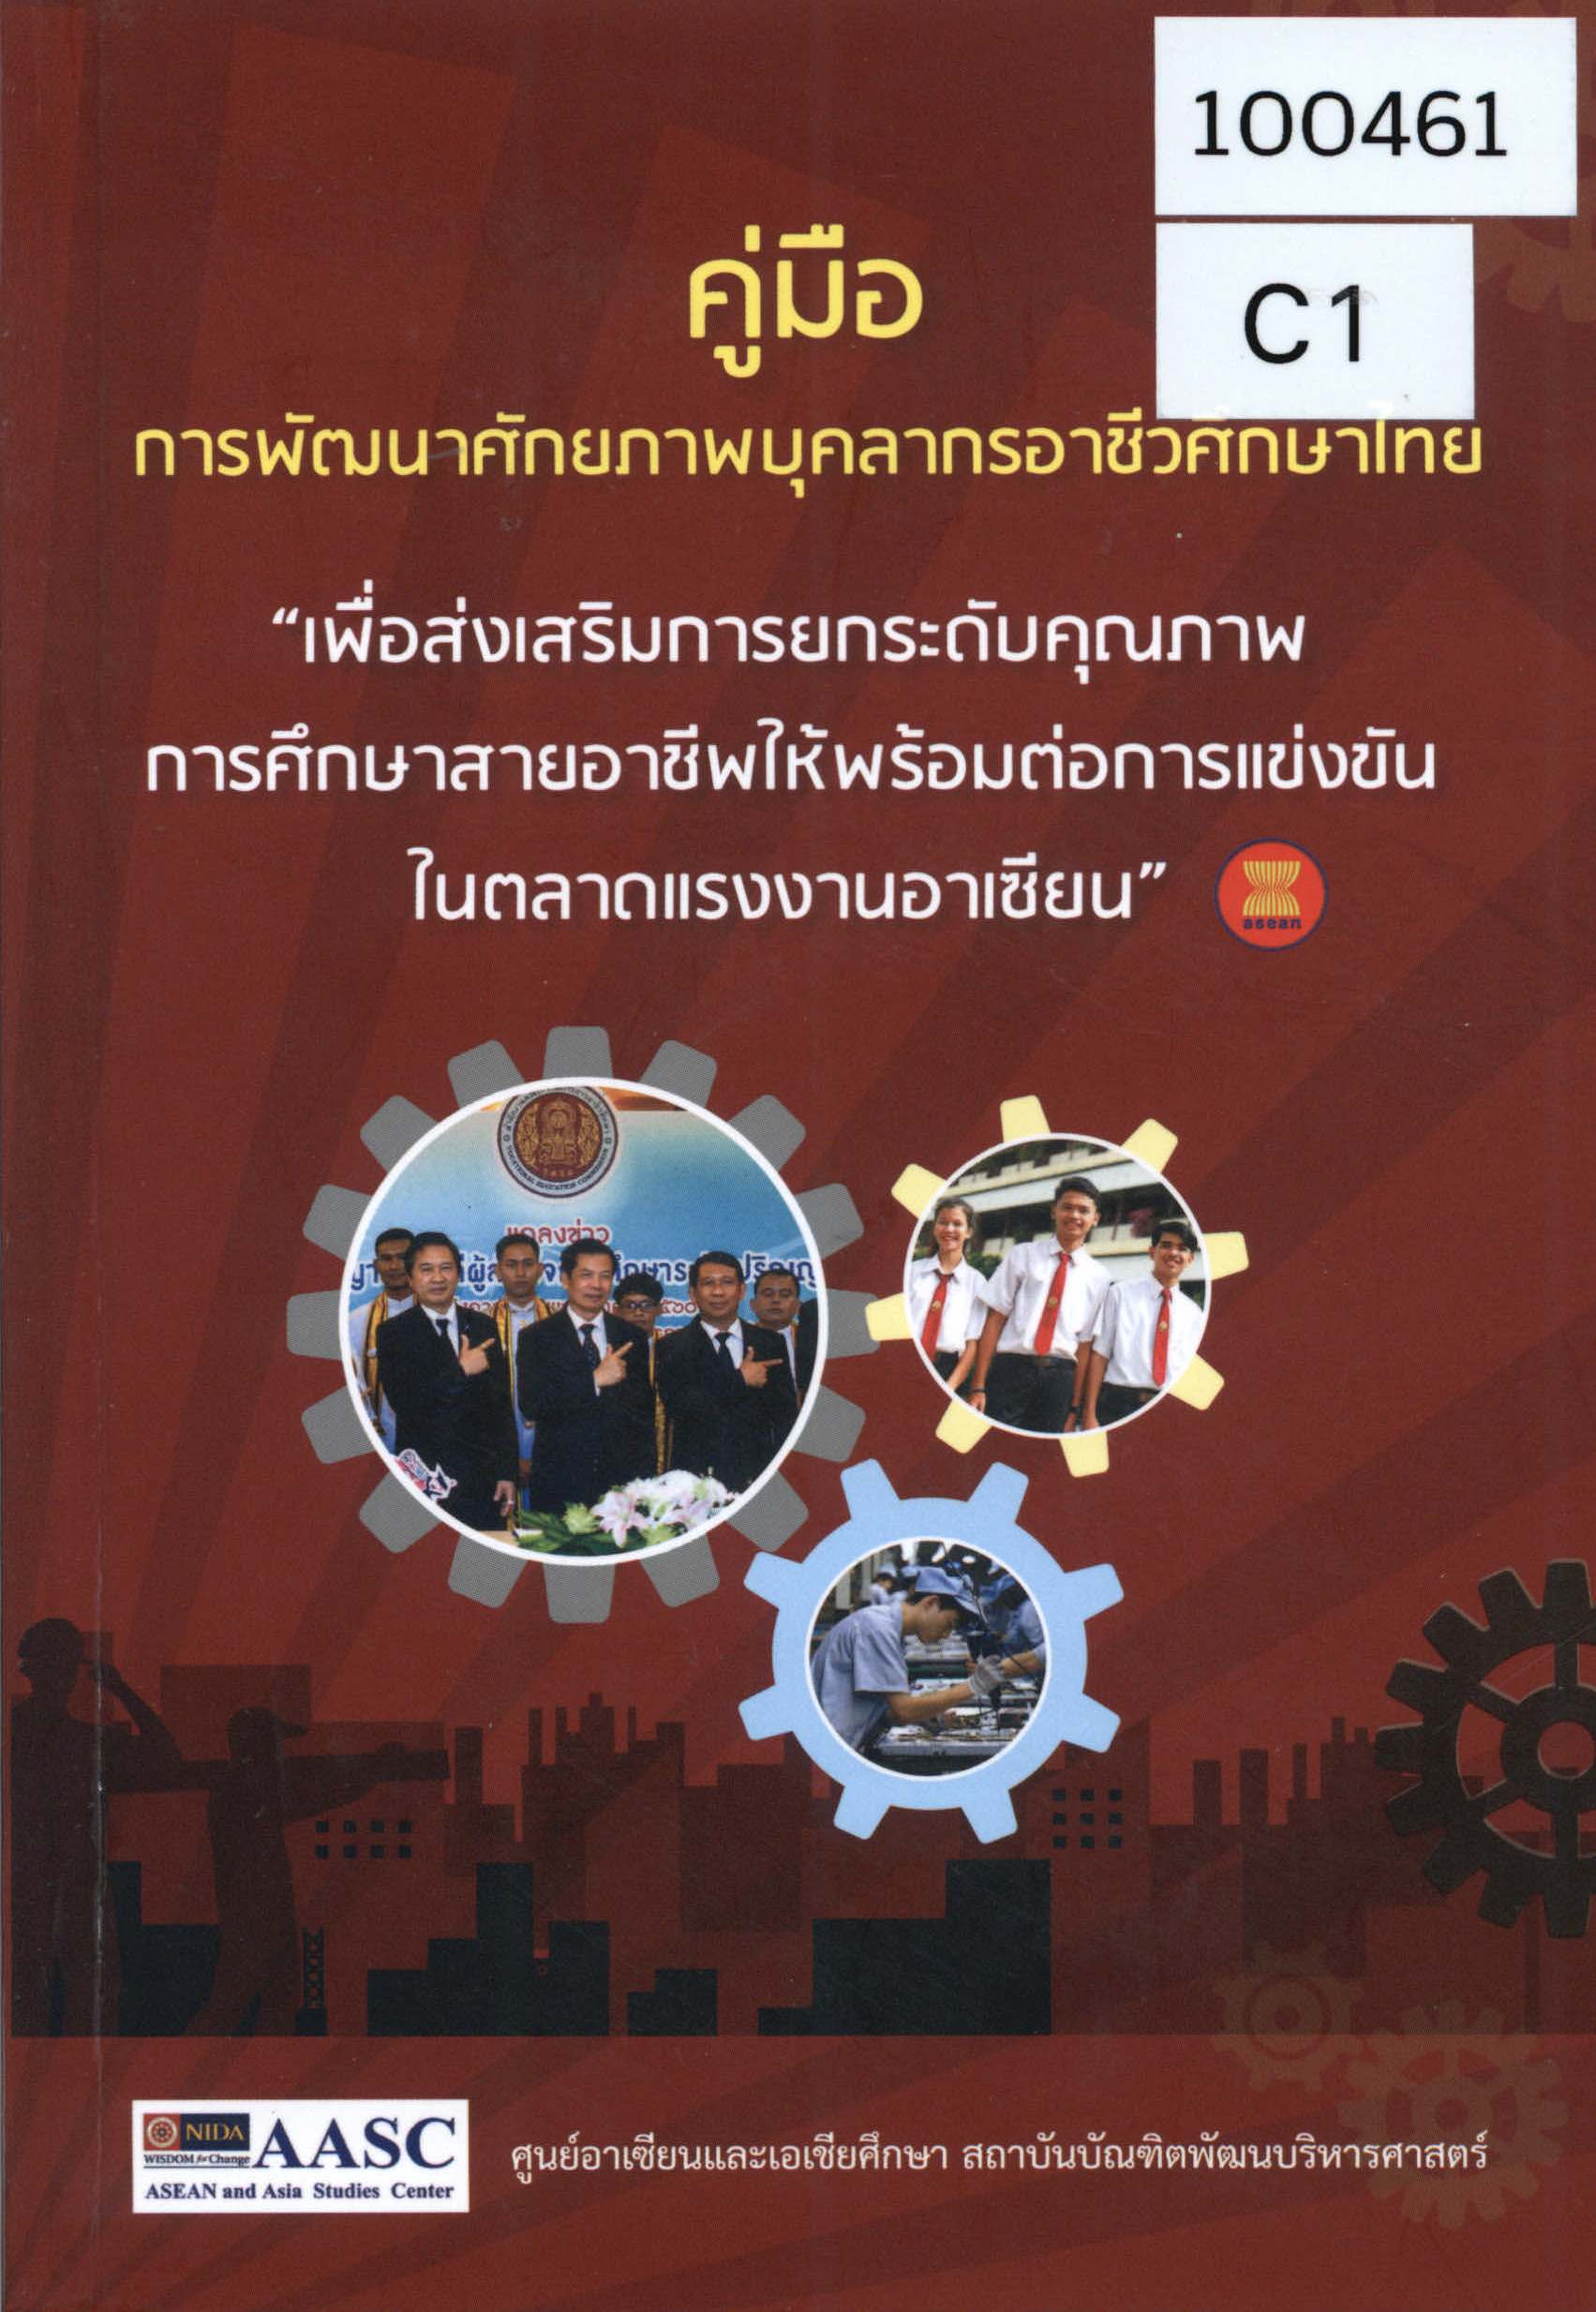 คู่มือการพัฒนาศักยภาพบุคลากรอาชีวศึกษาไทย “เพื่อส่งเสริมการยกระดับคุณภาพการศึกษาสายอาชีพให้พร้อมต่อการแข่งขันในตลาดแรงงานอาเซียน”